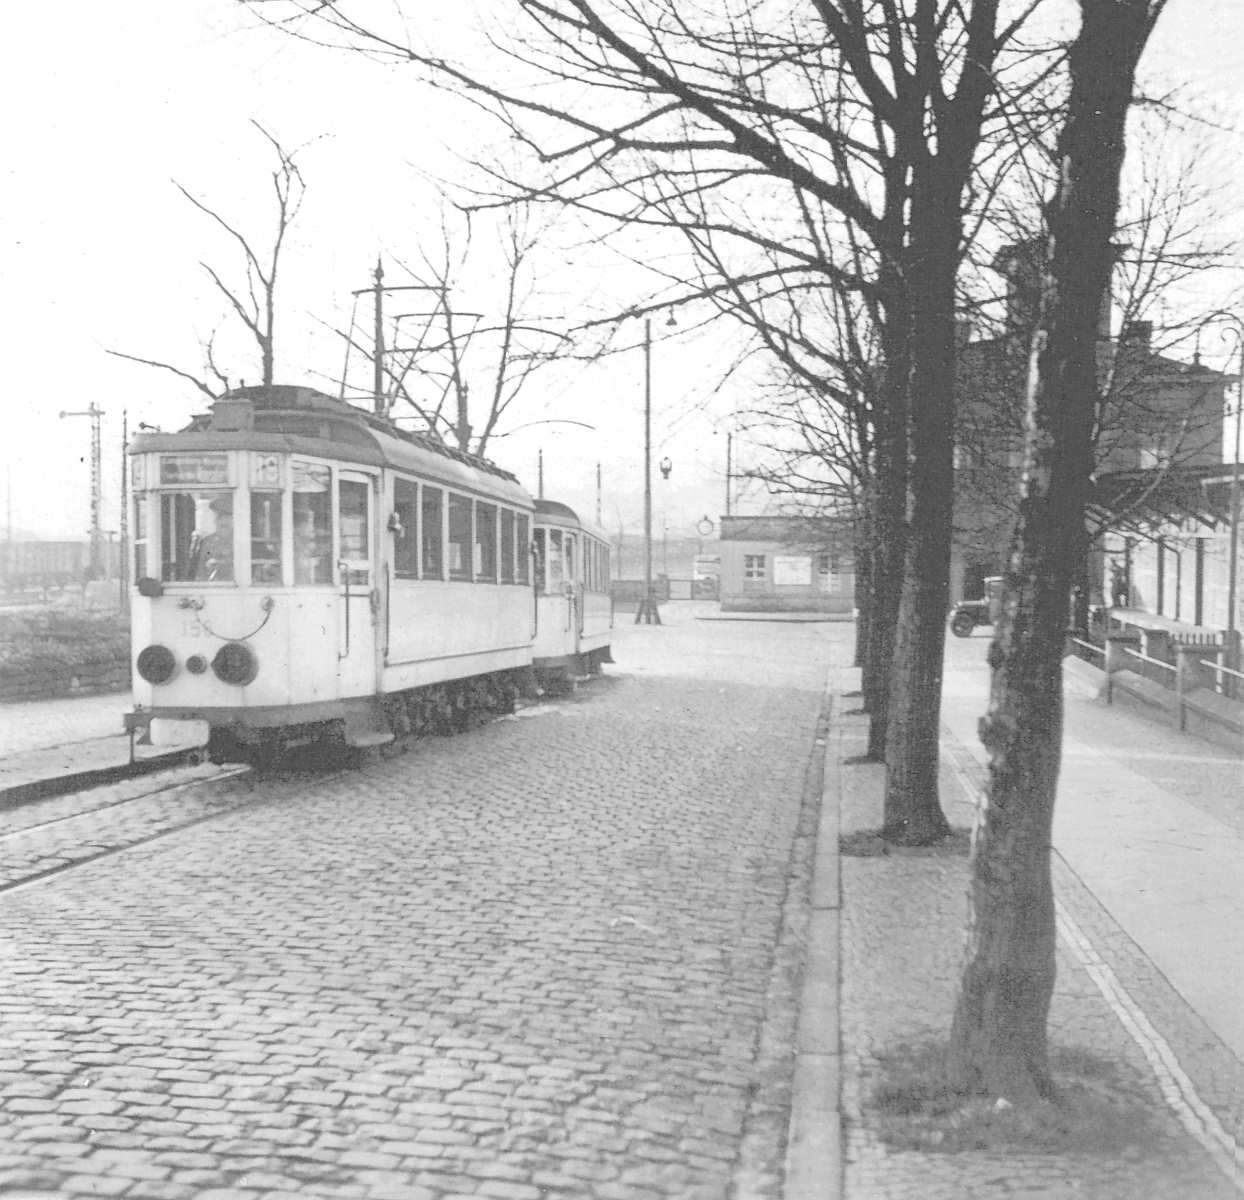 WuppertalerStrassenbahn/(40)_Bahnhof_Tram_Wuppertal_Wagen156_Linie19_Langenberg_nach_Ronsdorf_wohl_anno_1940_mit_Scheinwerfer-Verdunkelung